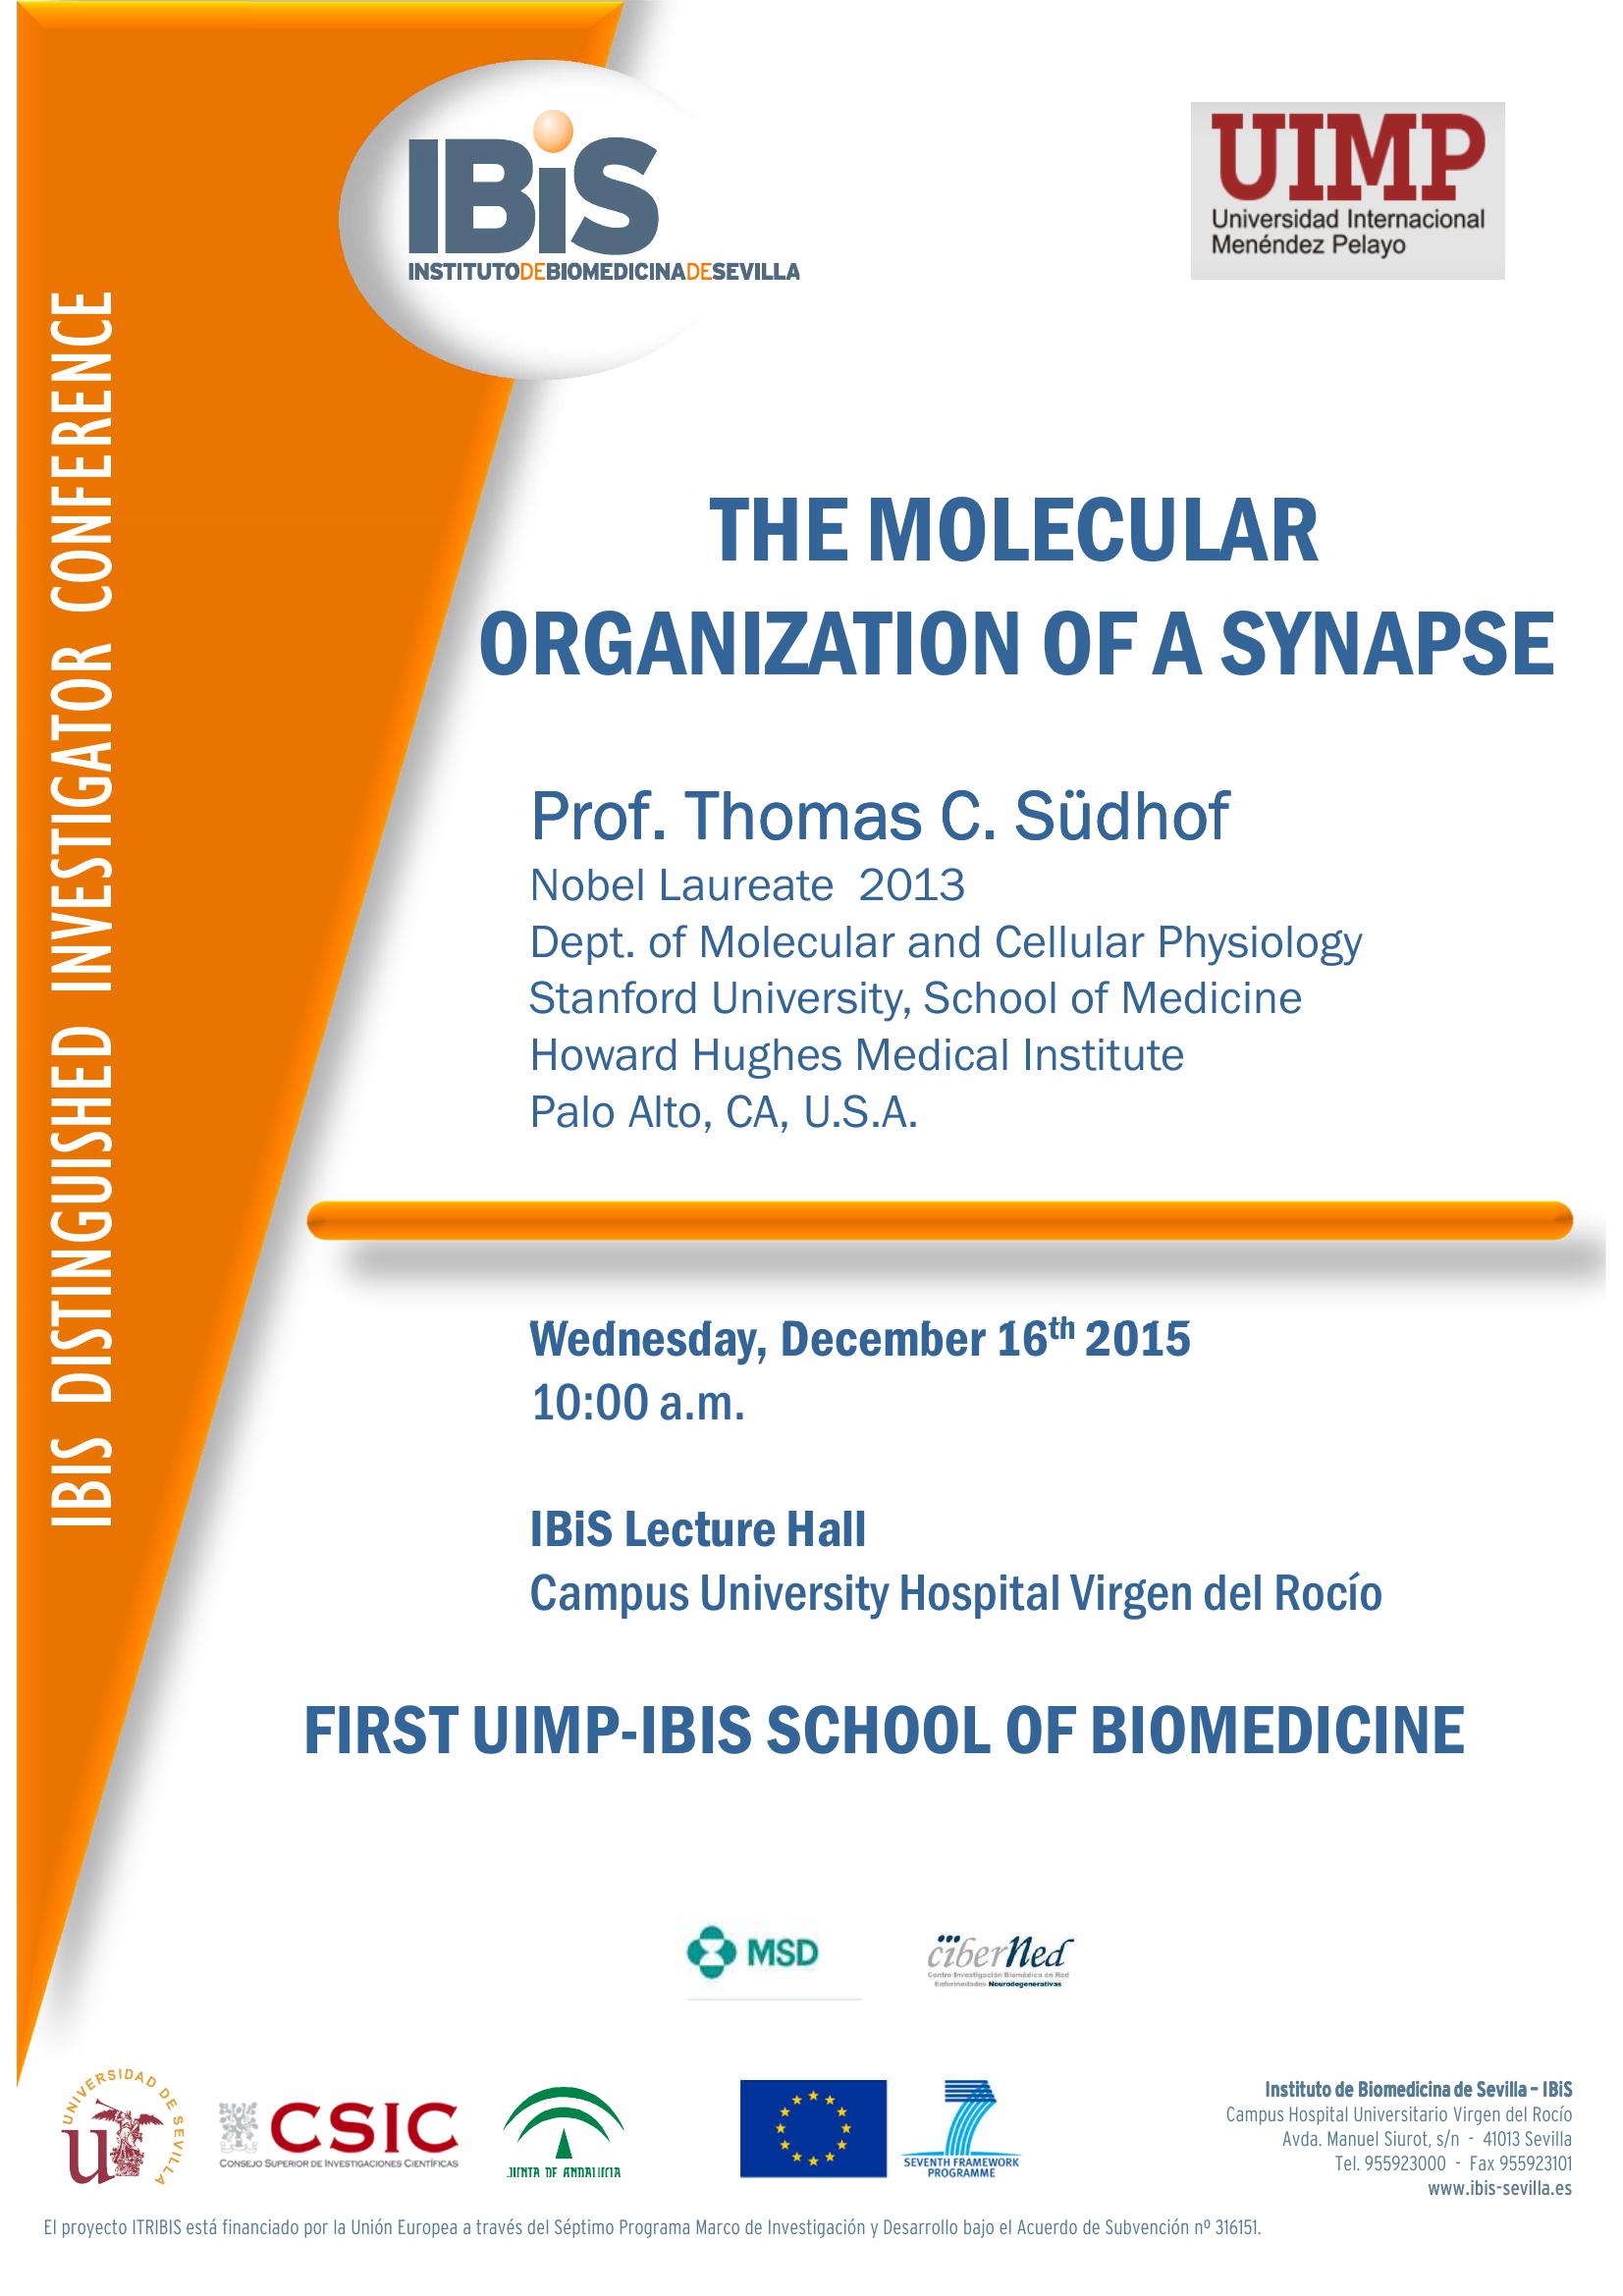 Poster: First UIMP-IBiS School of Biomedicine